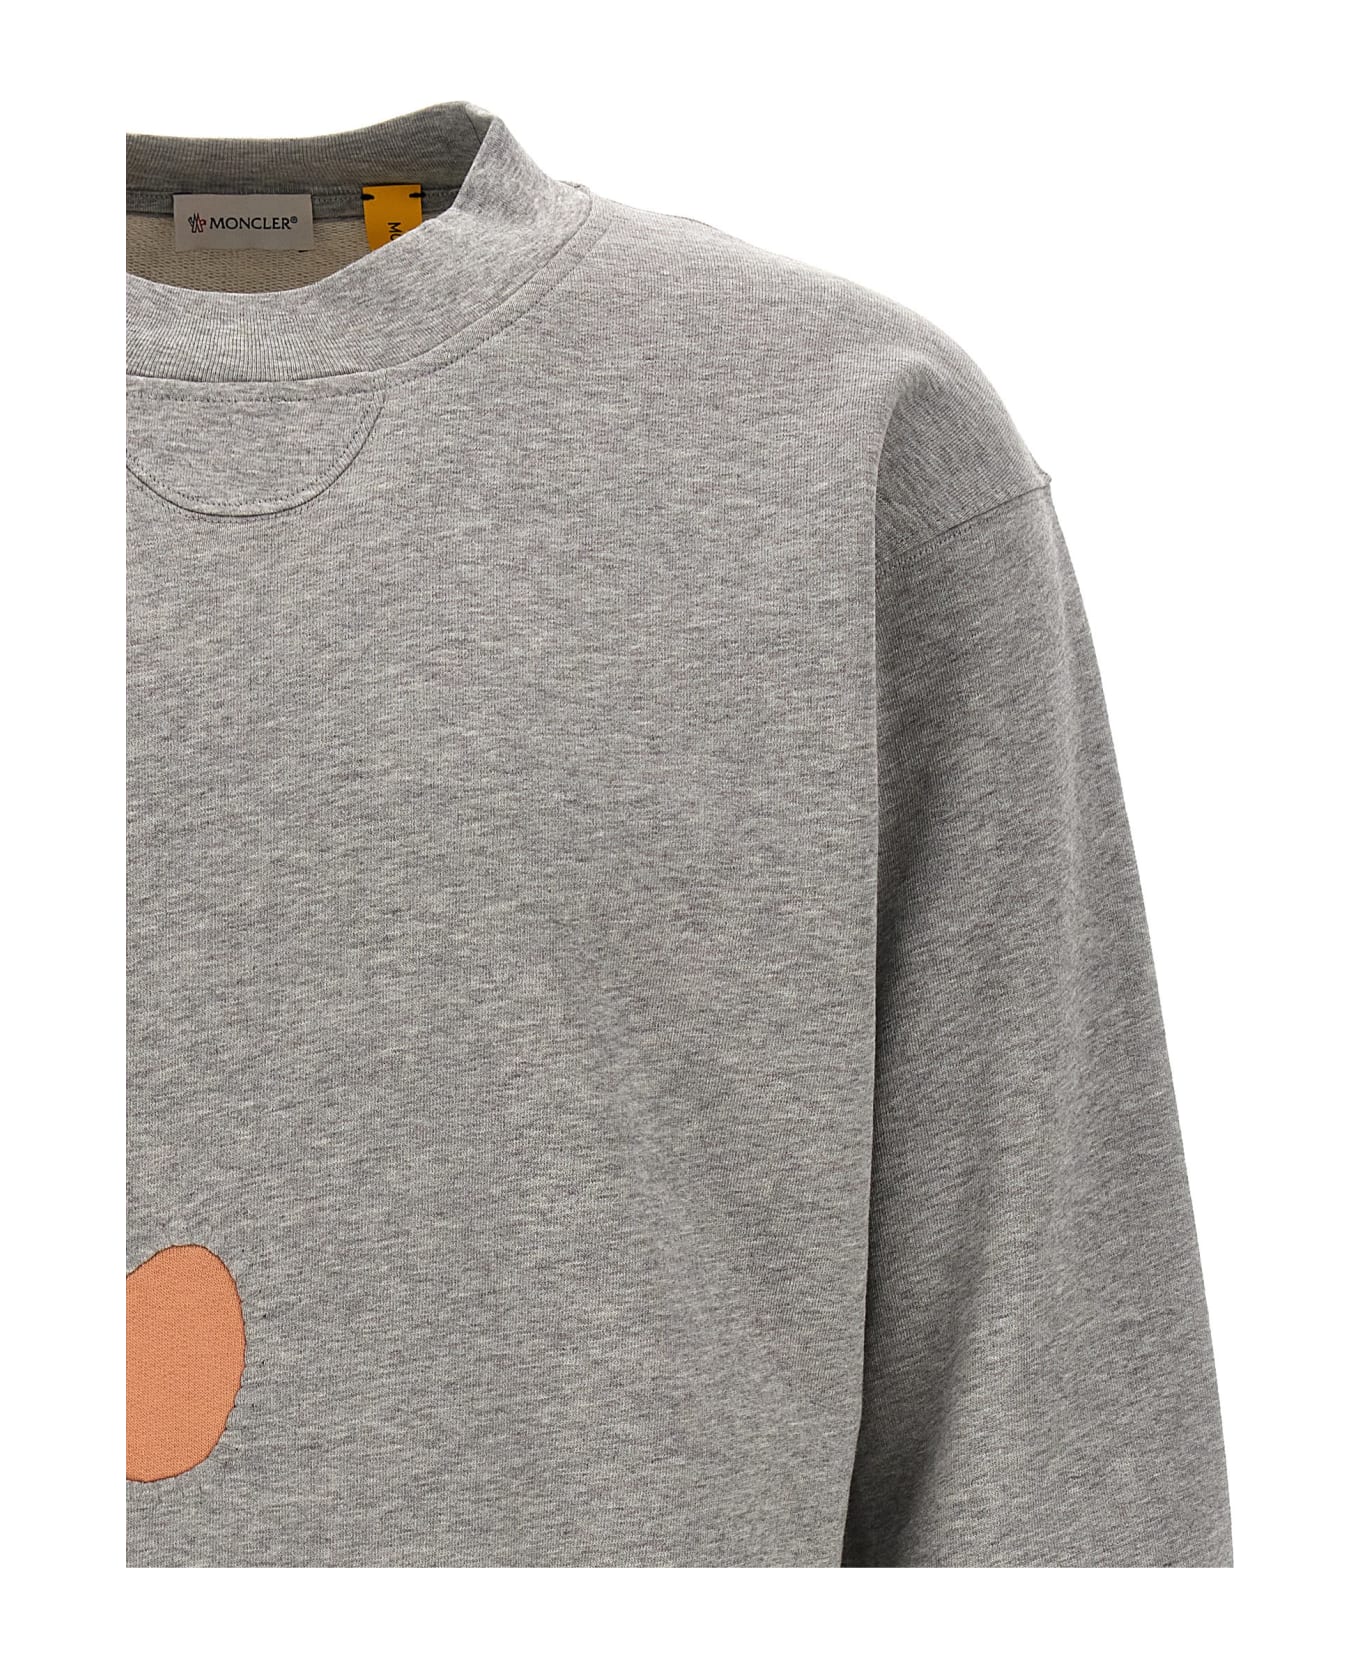 Moncler Genius X Salehe Bembury Sweatshirt - Gray